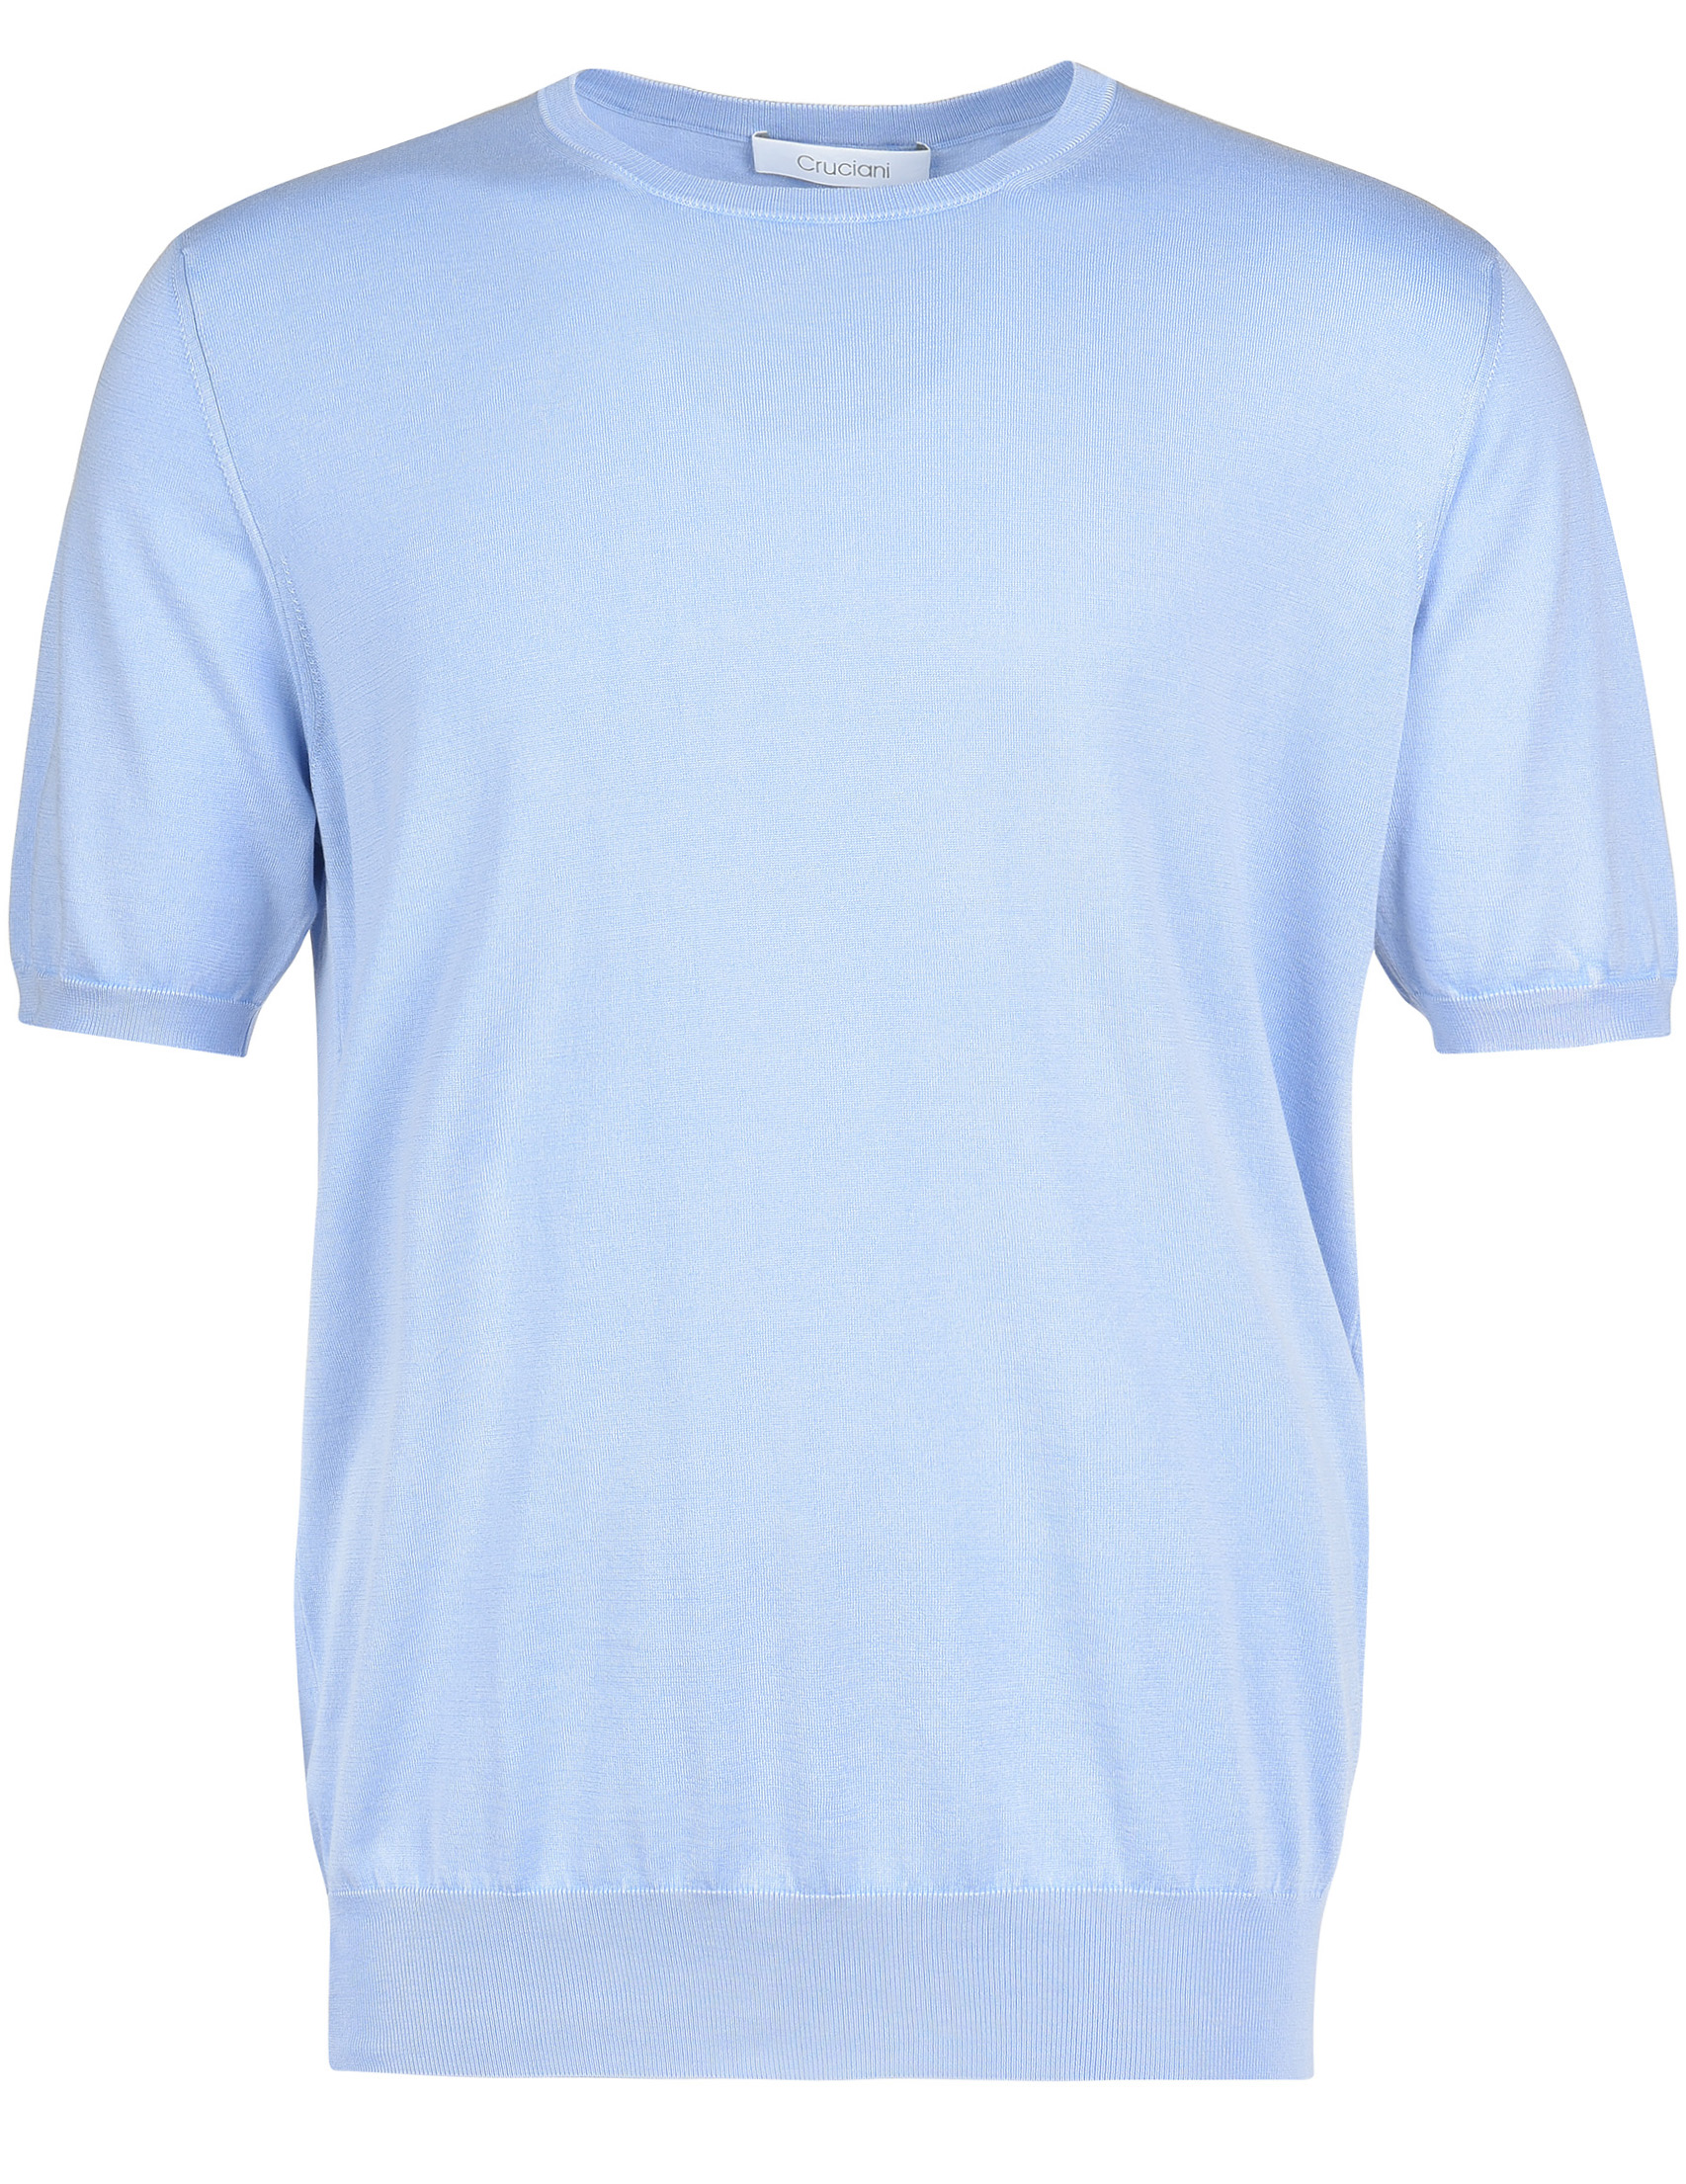 Мужская футболка CRUCIANI 284-32-3002_blue